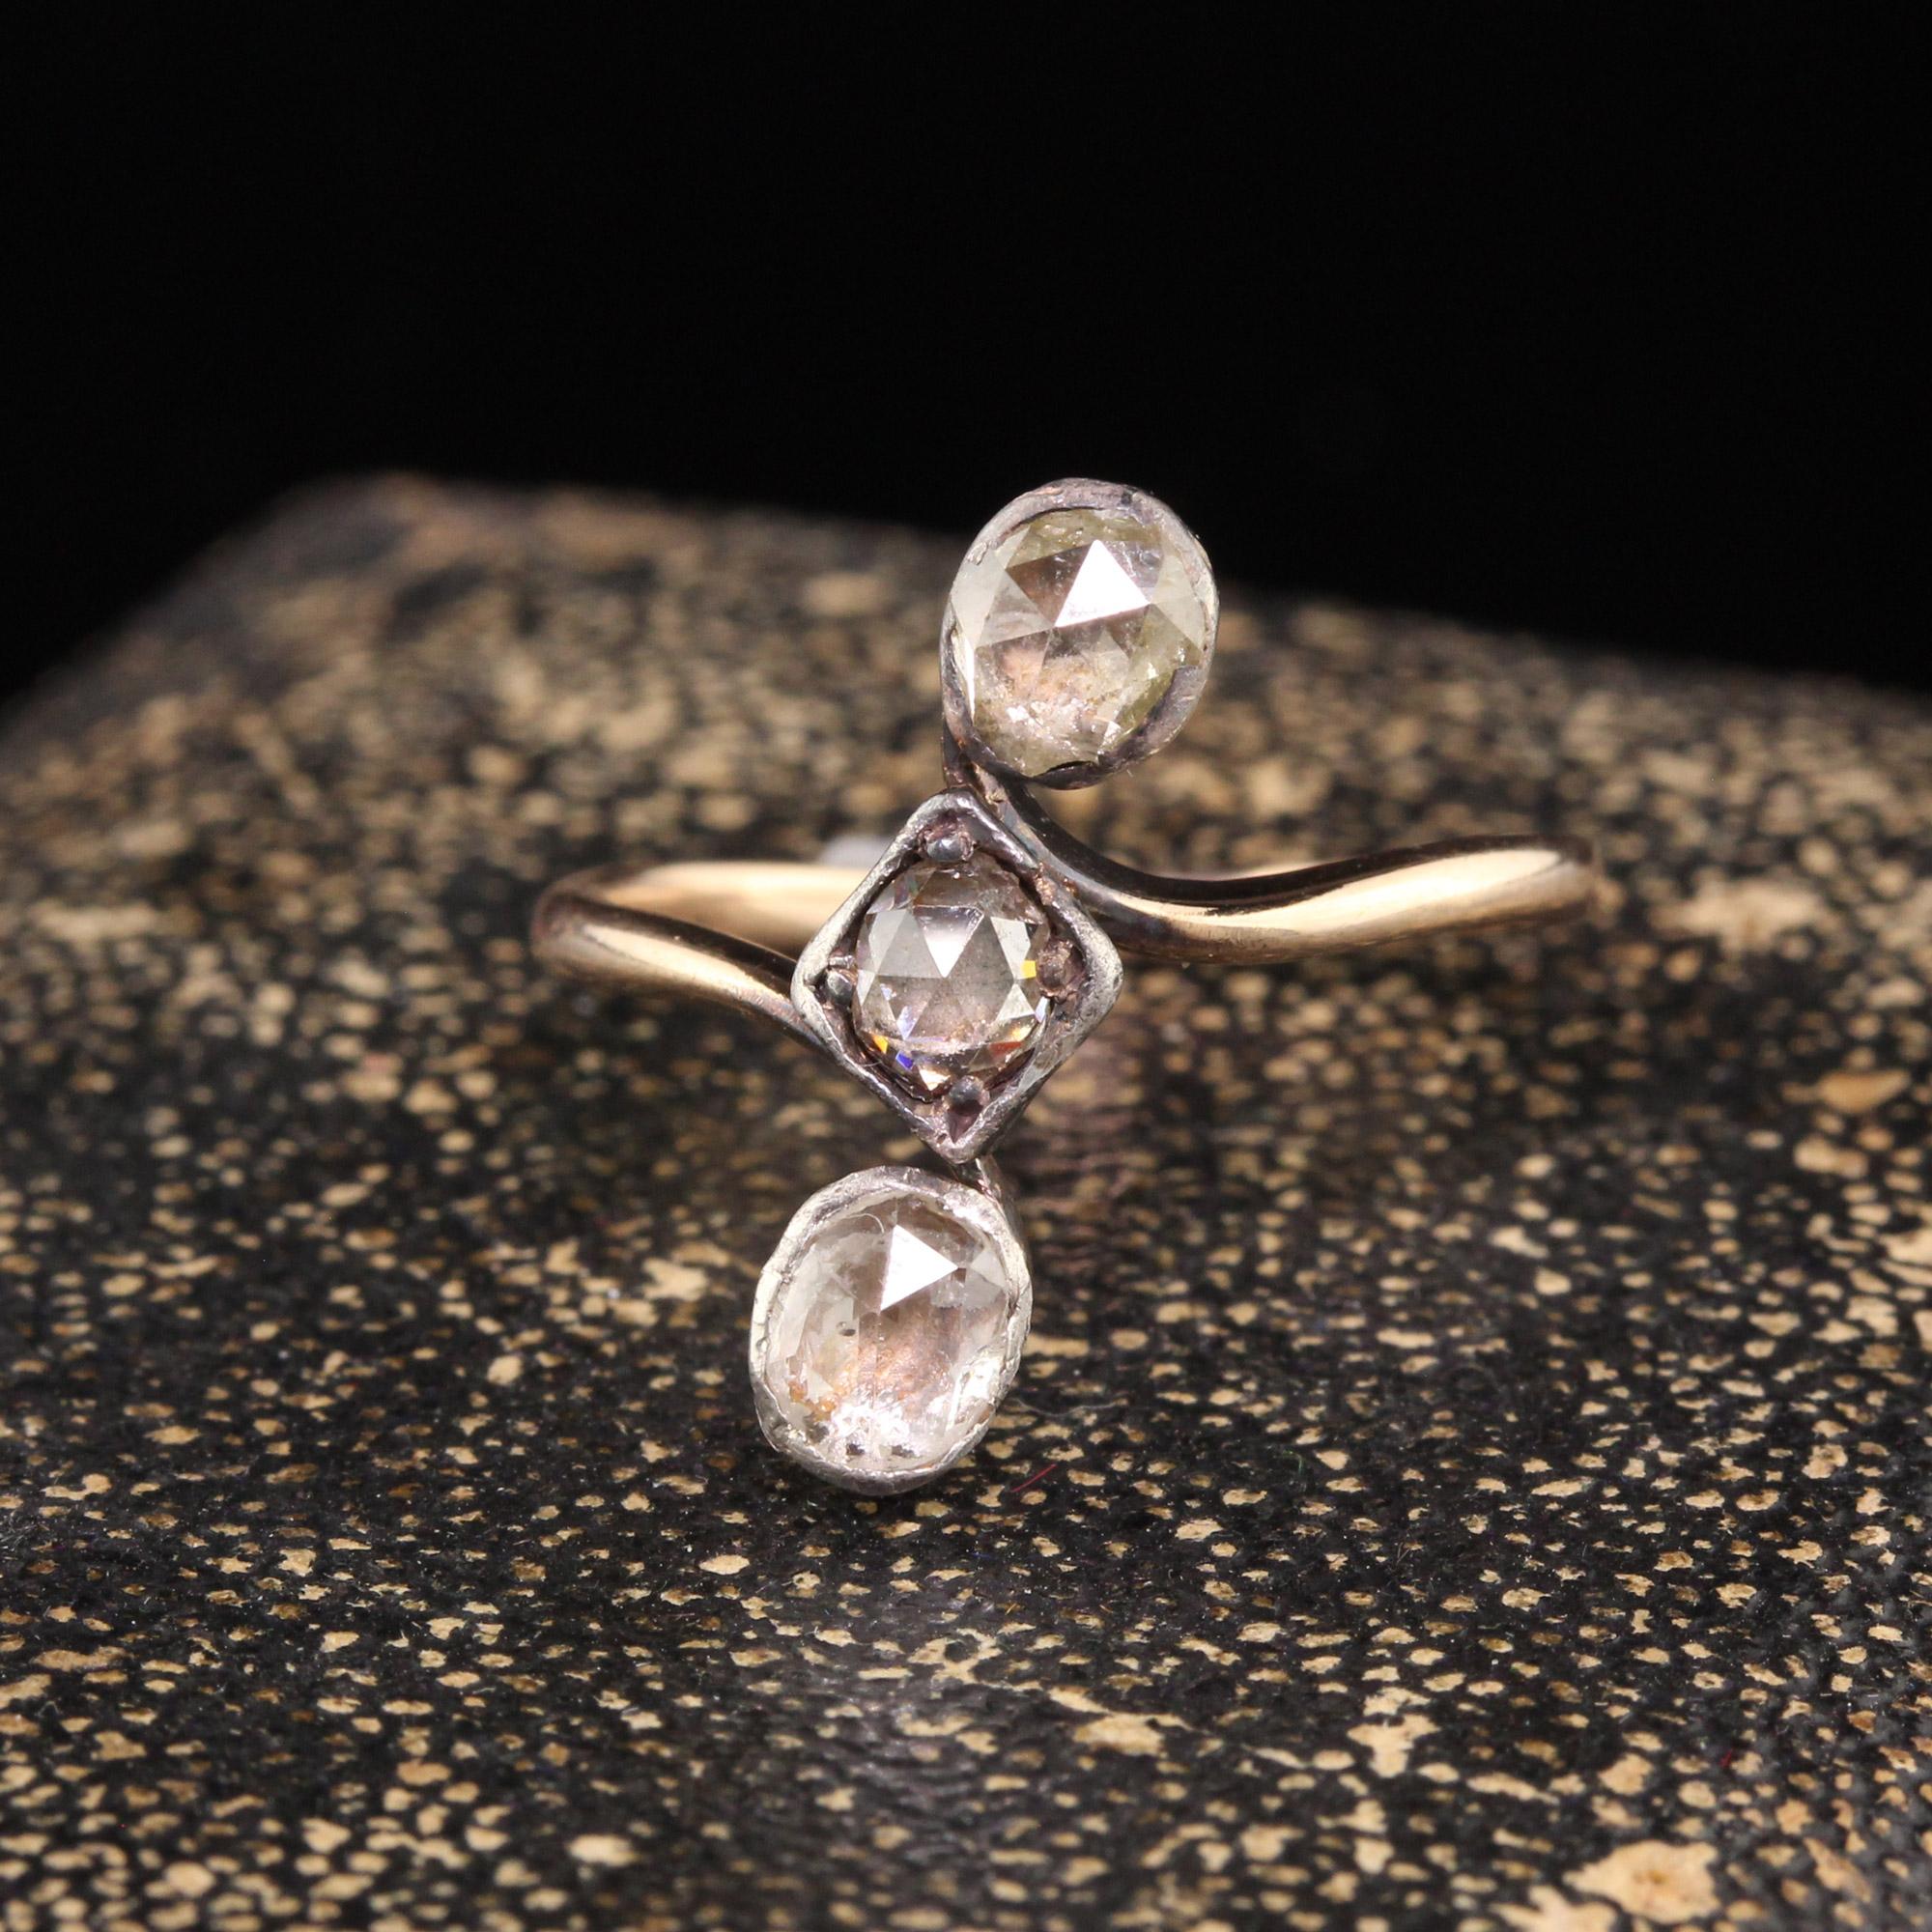 Schöne antike georgische 18K Gelbgold Silber Top Rose Cut Diamond Drei Stein Ring. Dieser prächtige georgische Ring ist aus 18 Karat Gelbgold und Silber gefertigt. Der Ring hat 3 Rosenschliffe, die mit Silber unterlegt sind.

Artikel #R1285

Metall: